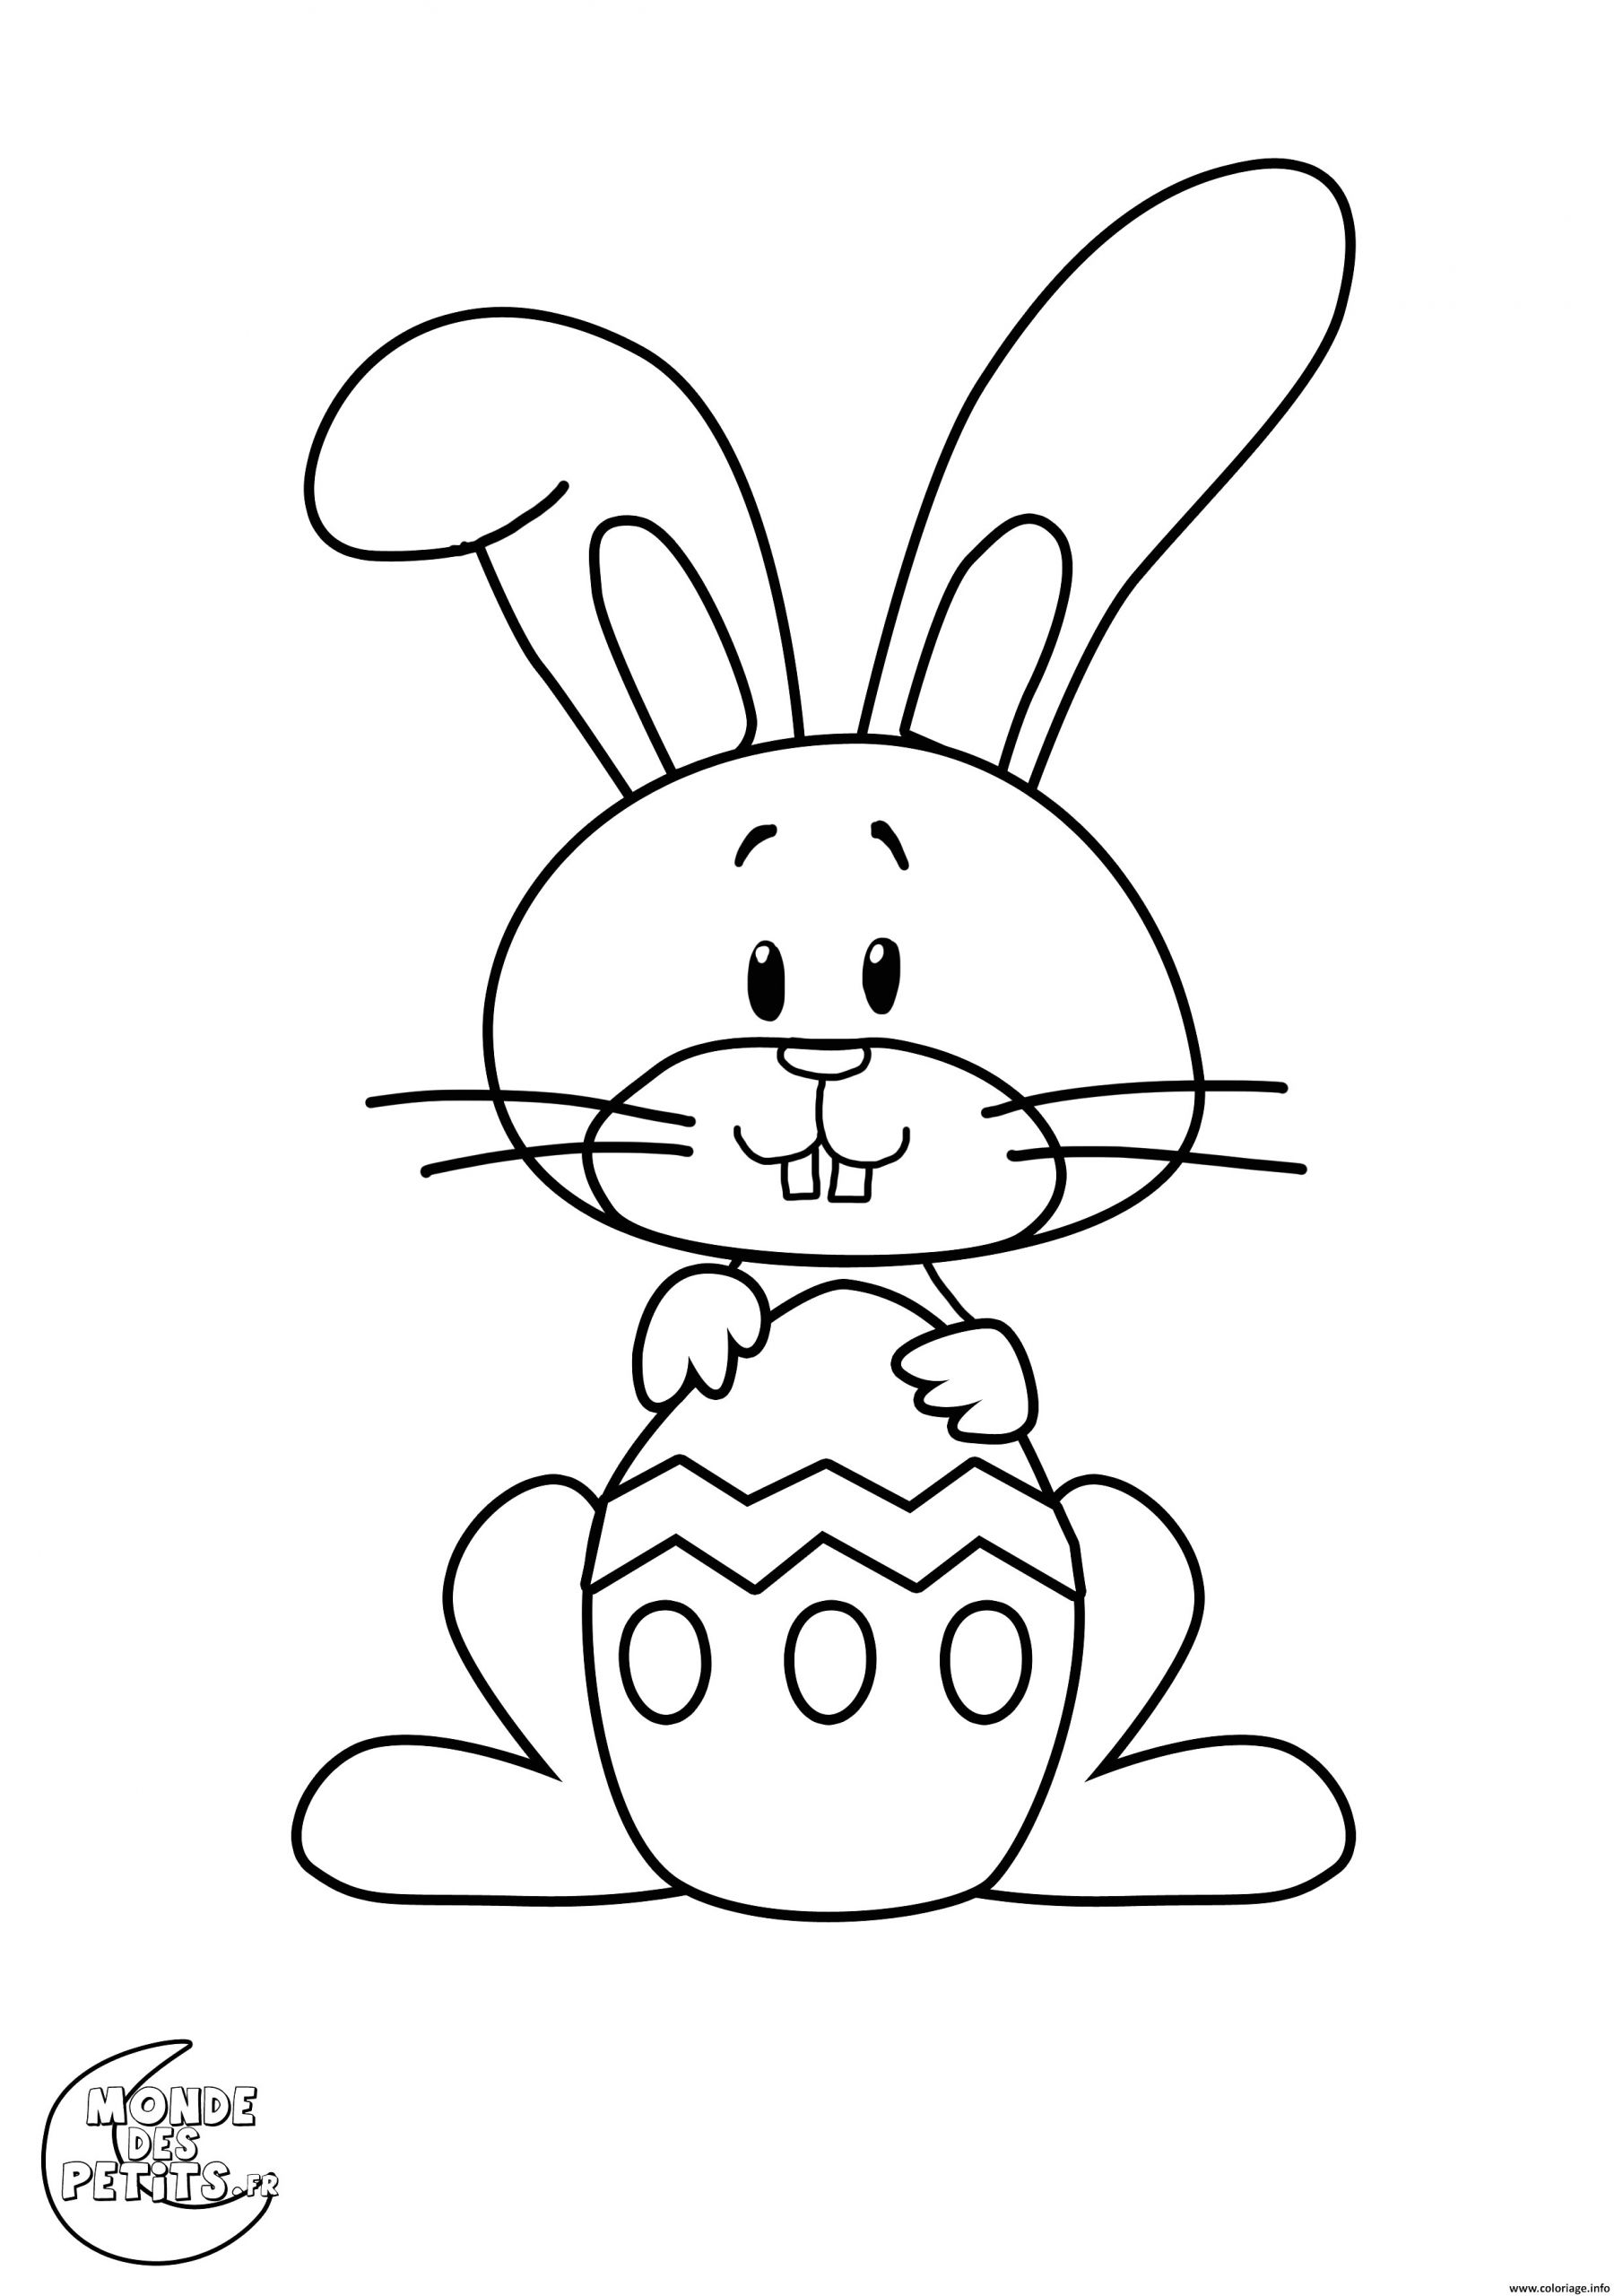 dessiner un lapin facile nouveau dessiner un lapin facile le meilleur de dessin lapin facile elegant of dessiner un lapin facile